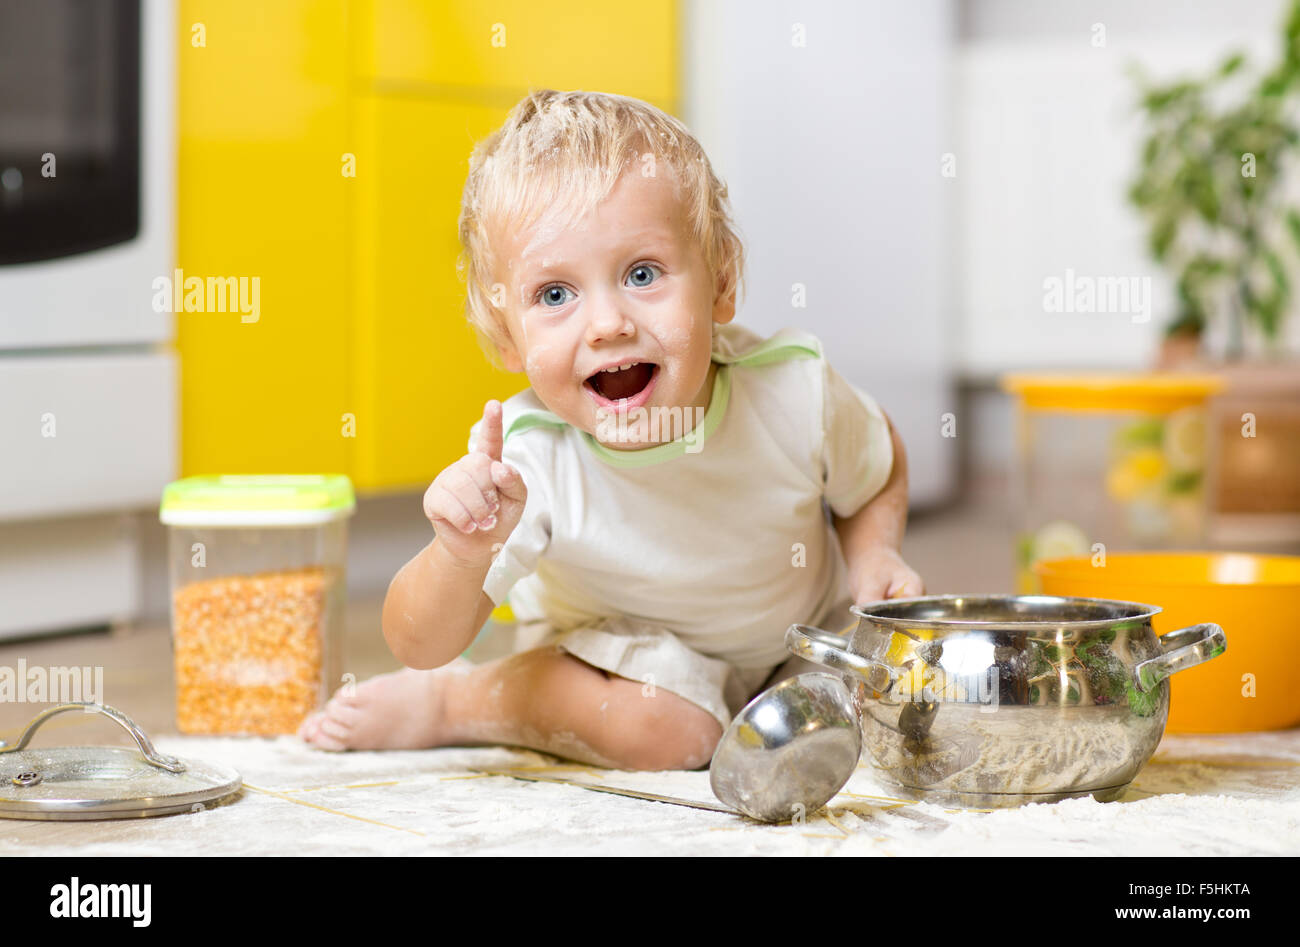 Giocoso bambino ragazzo con stoviglie e prodotti alimentari sul pavimento in cucina Foto Stock